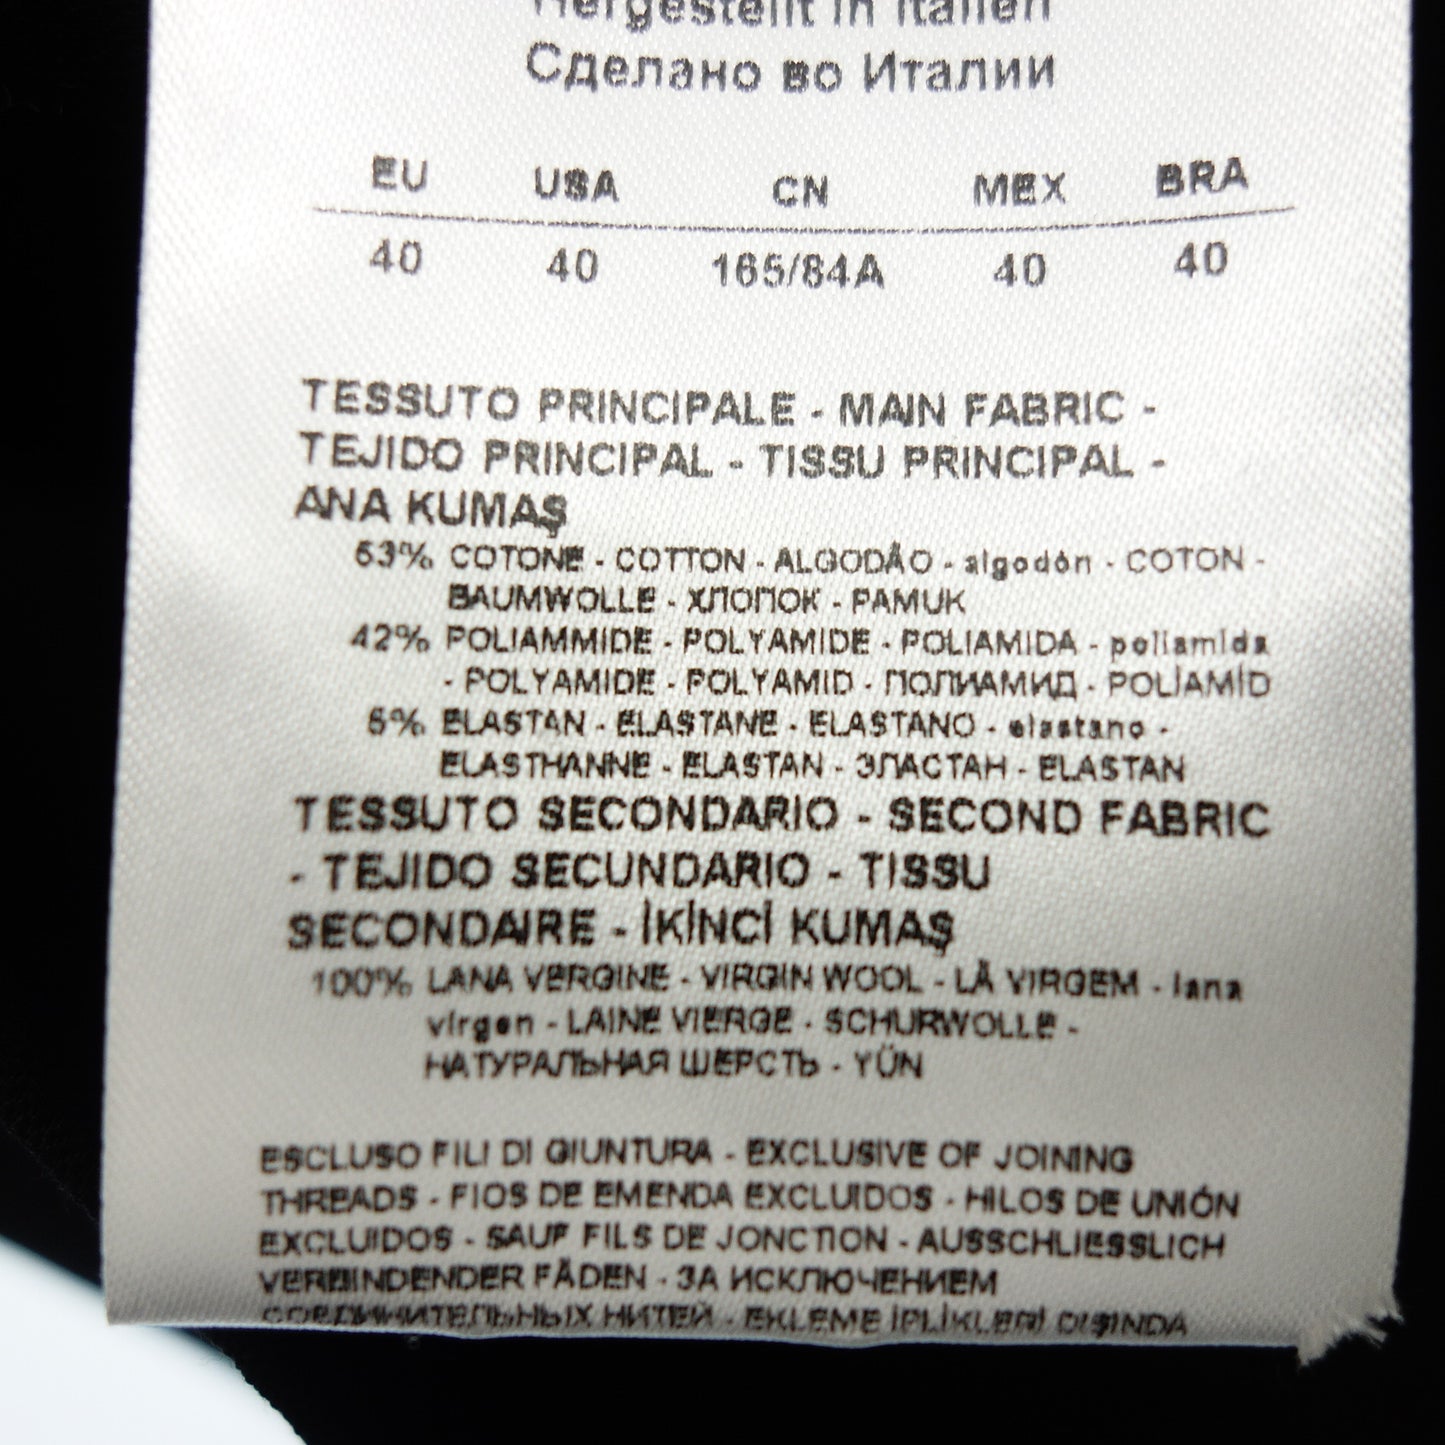 ジョルジオアルマーニ ジャケット 3ポケット レディース ブラック 40 GIORGIO ARMANI【AFB15】【中古】